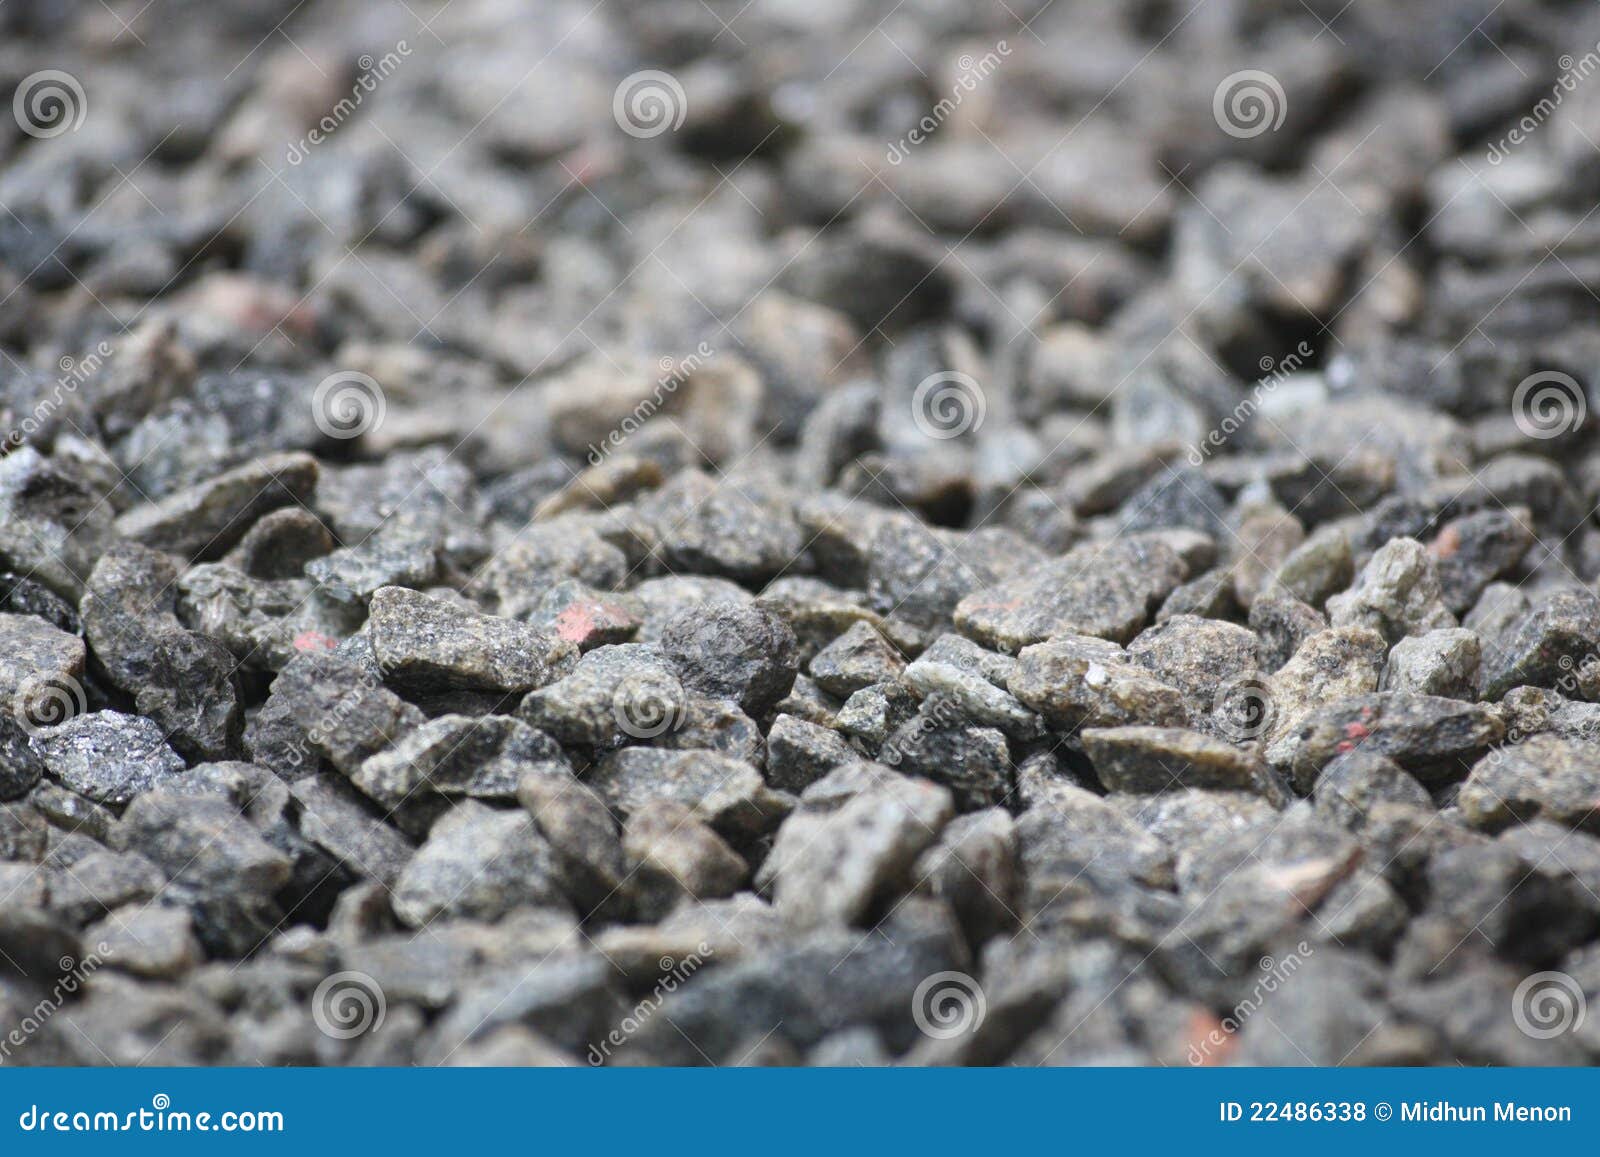 gravel textured bokeh background